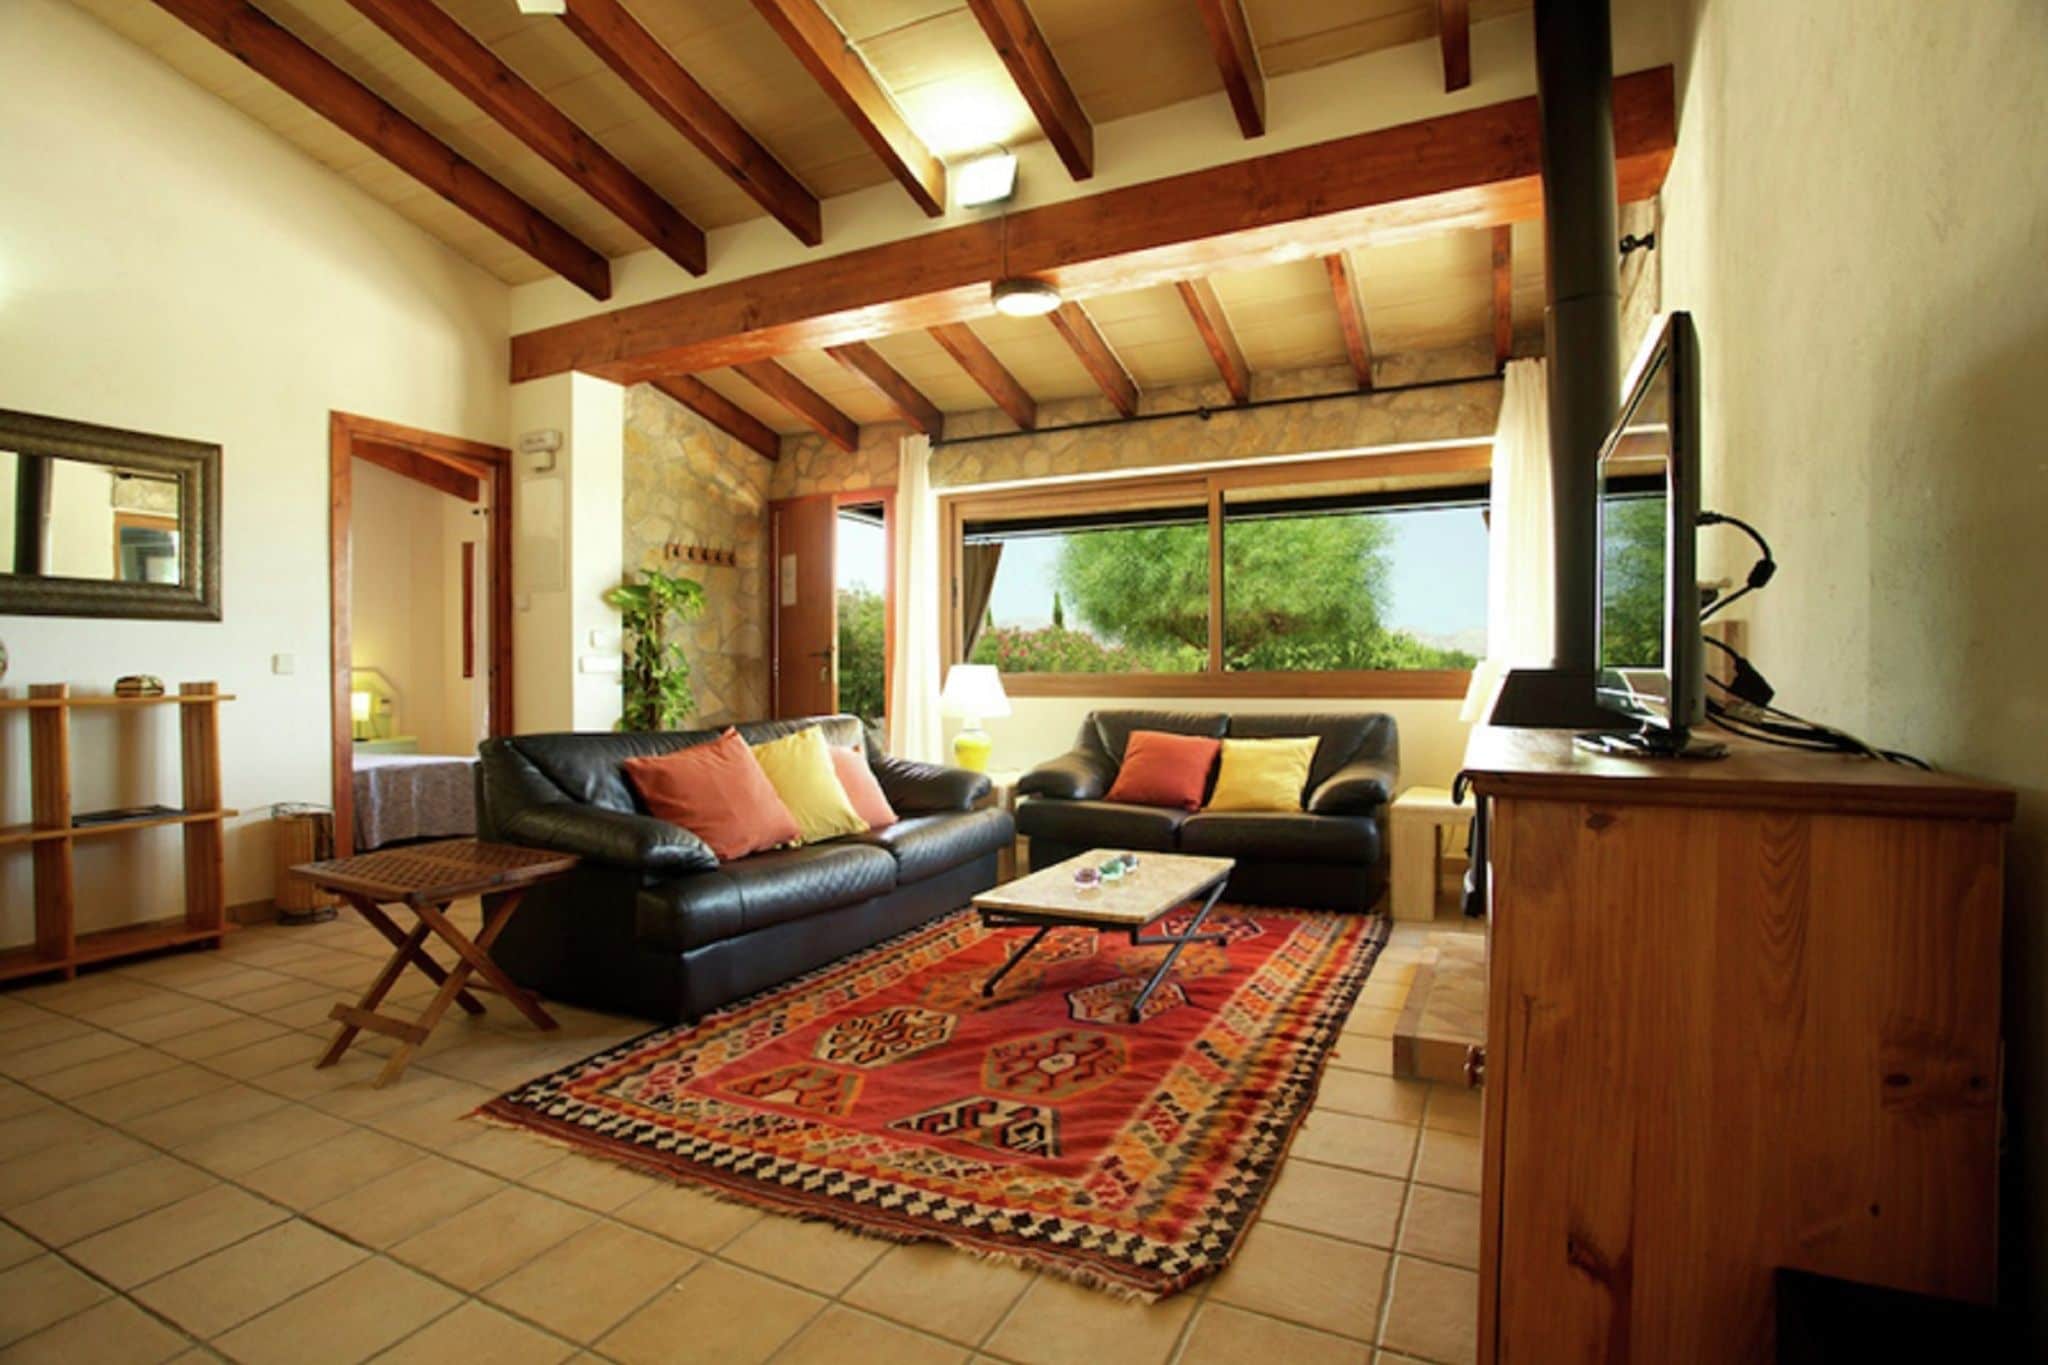 Maison de vacances confortable à Alcudia avec piscine privée